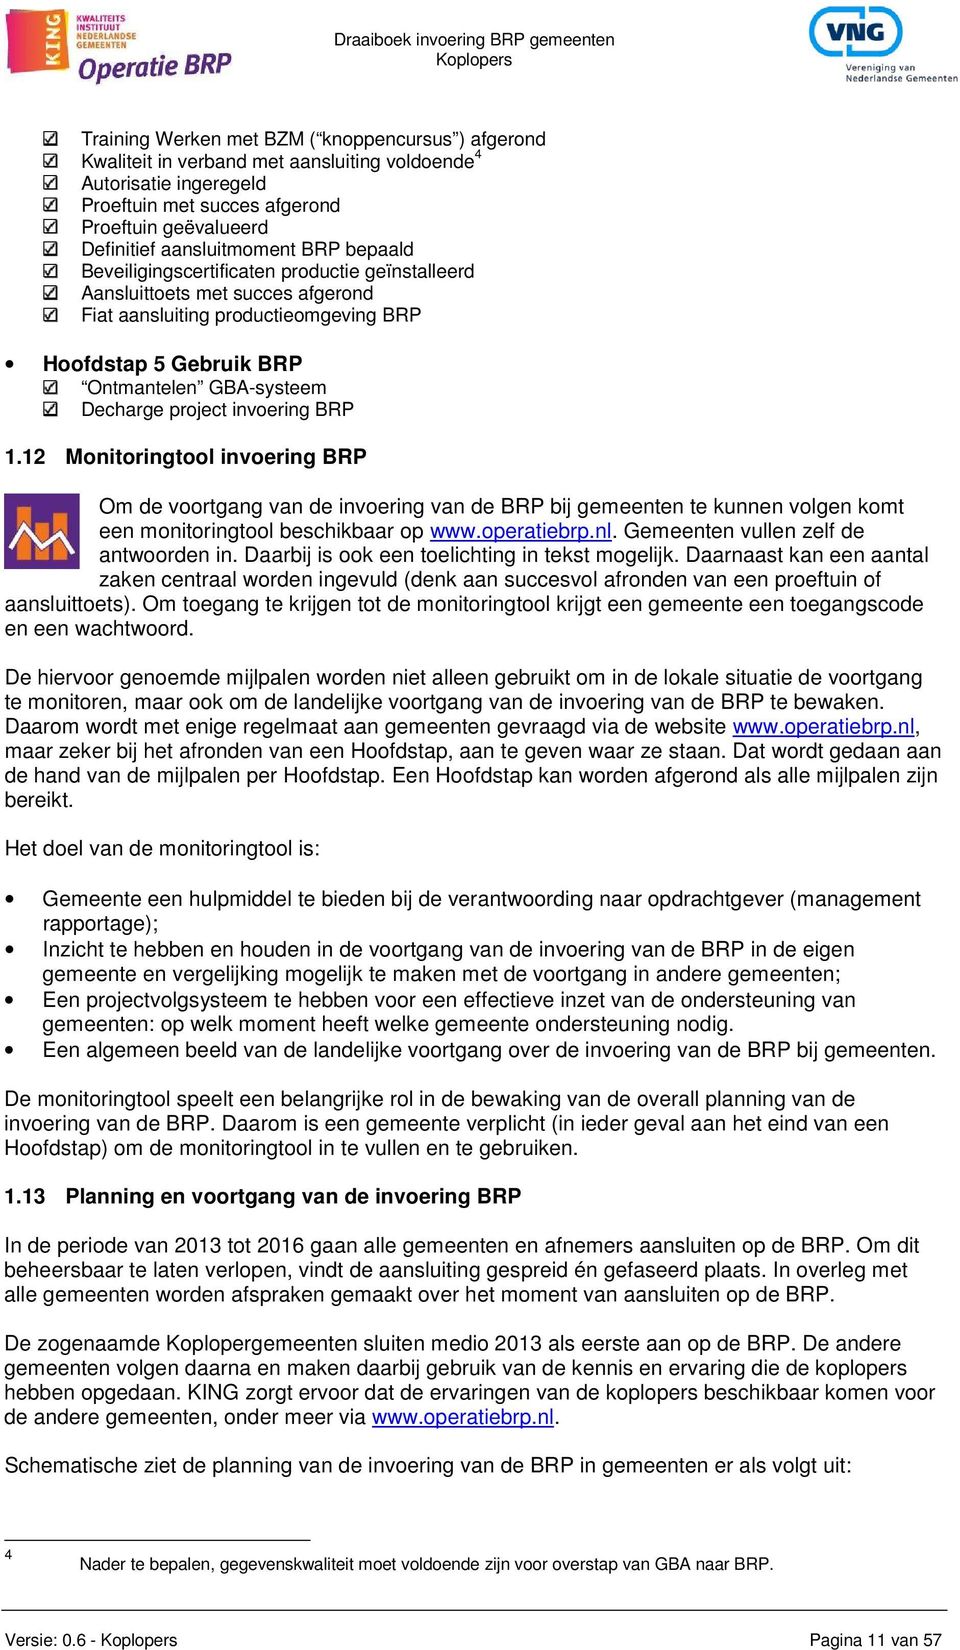 Decharge project invoering BRP 1.12 tool invoering BRP Om de voortgang van de invoering van de BRP bij gemeenten te kunnen volgen komt een monitoringtool beschikbaar op www.operatiebrp.nl.